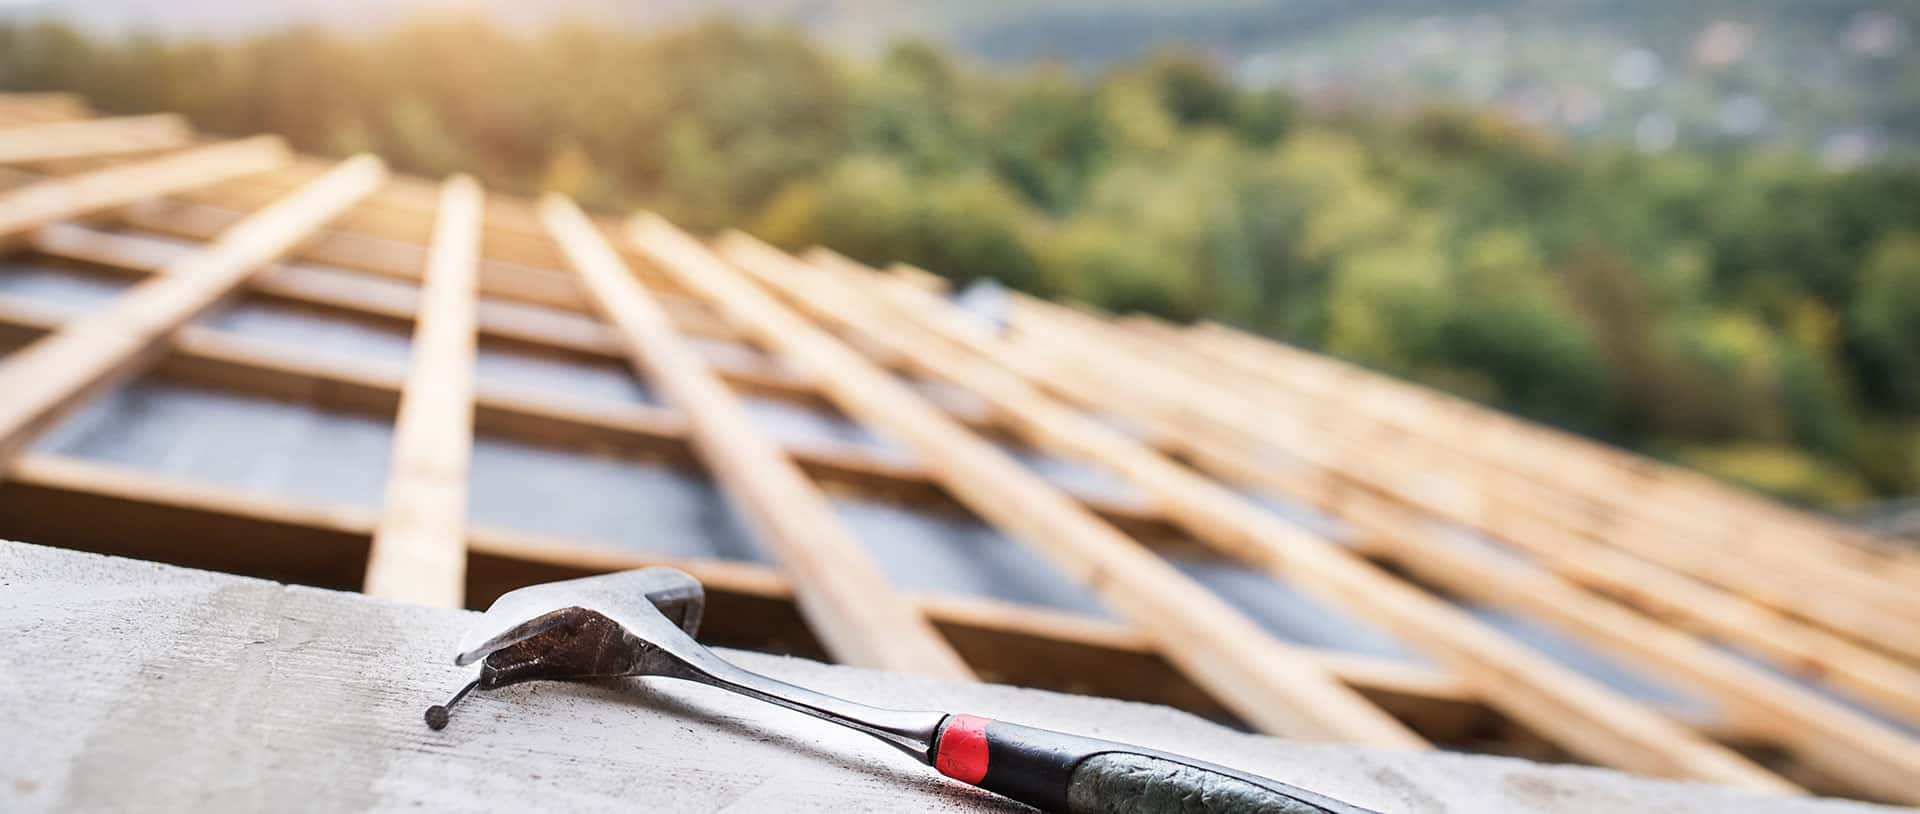 Roof Tile Repair Experts